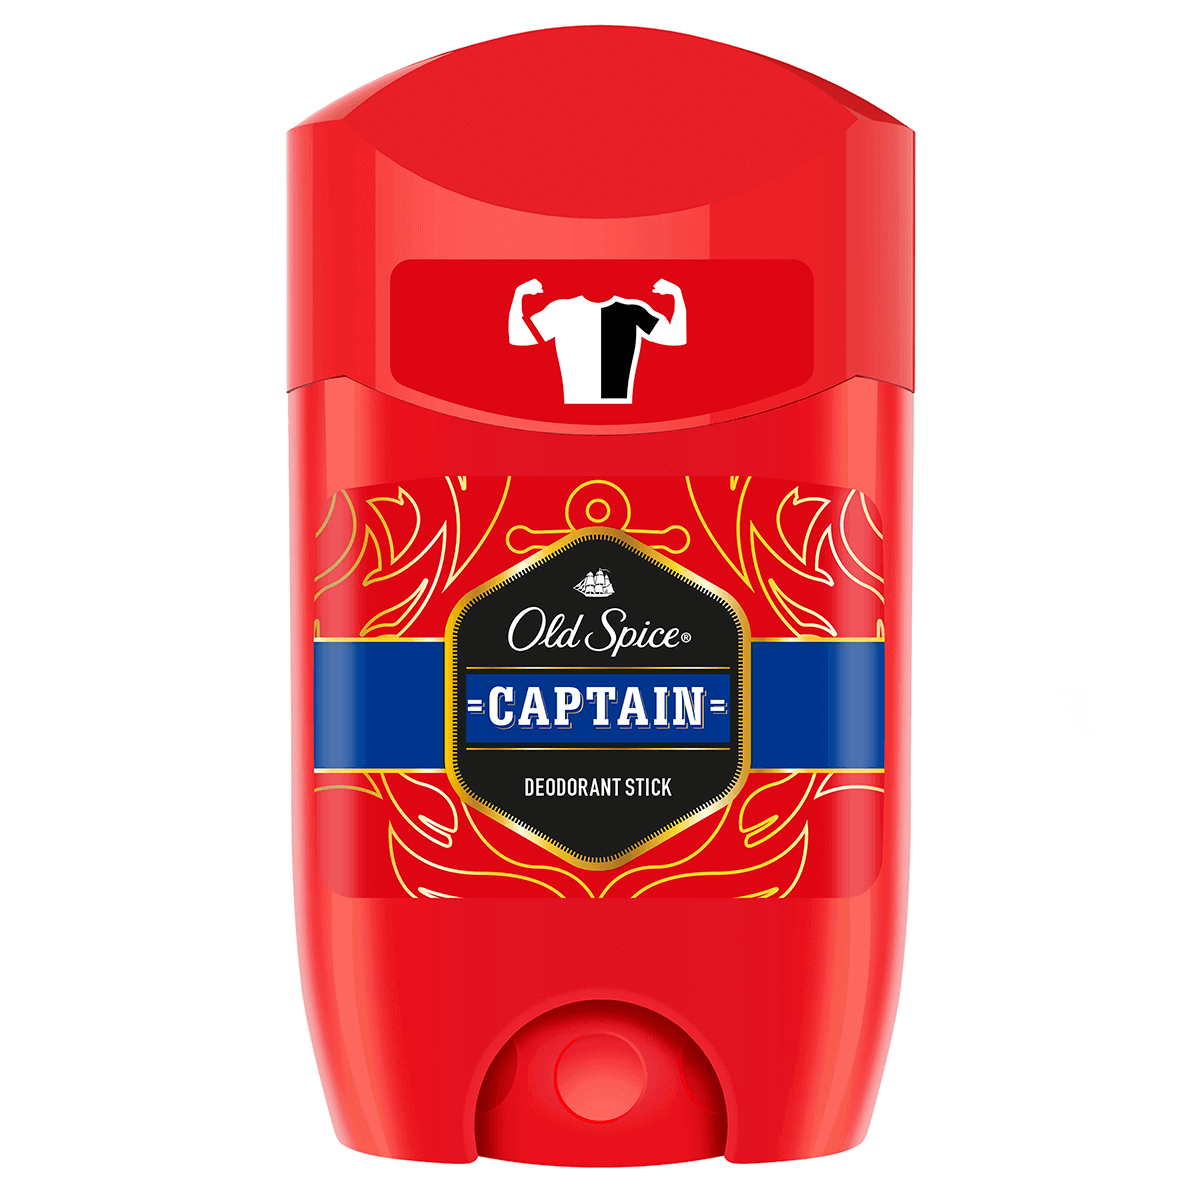 Deodorant Stick Captain - Bonherre